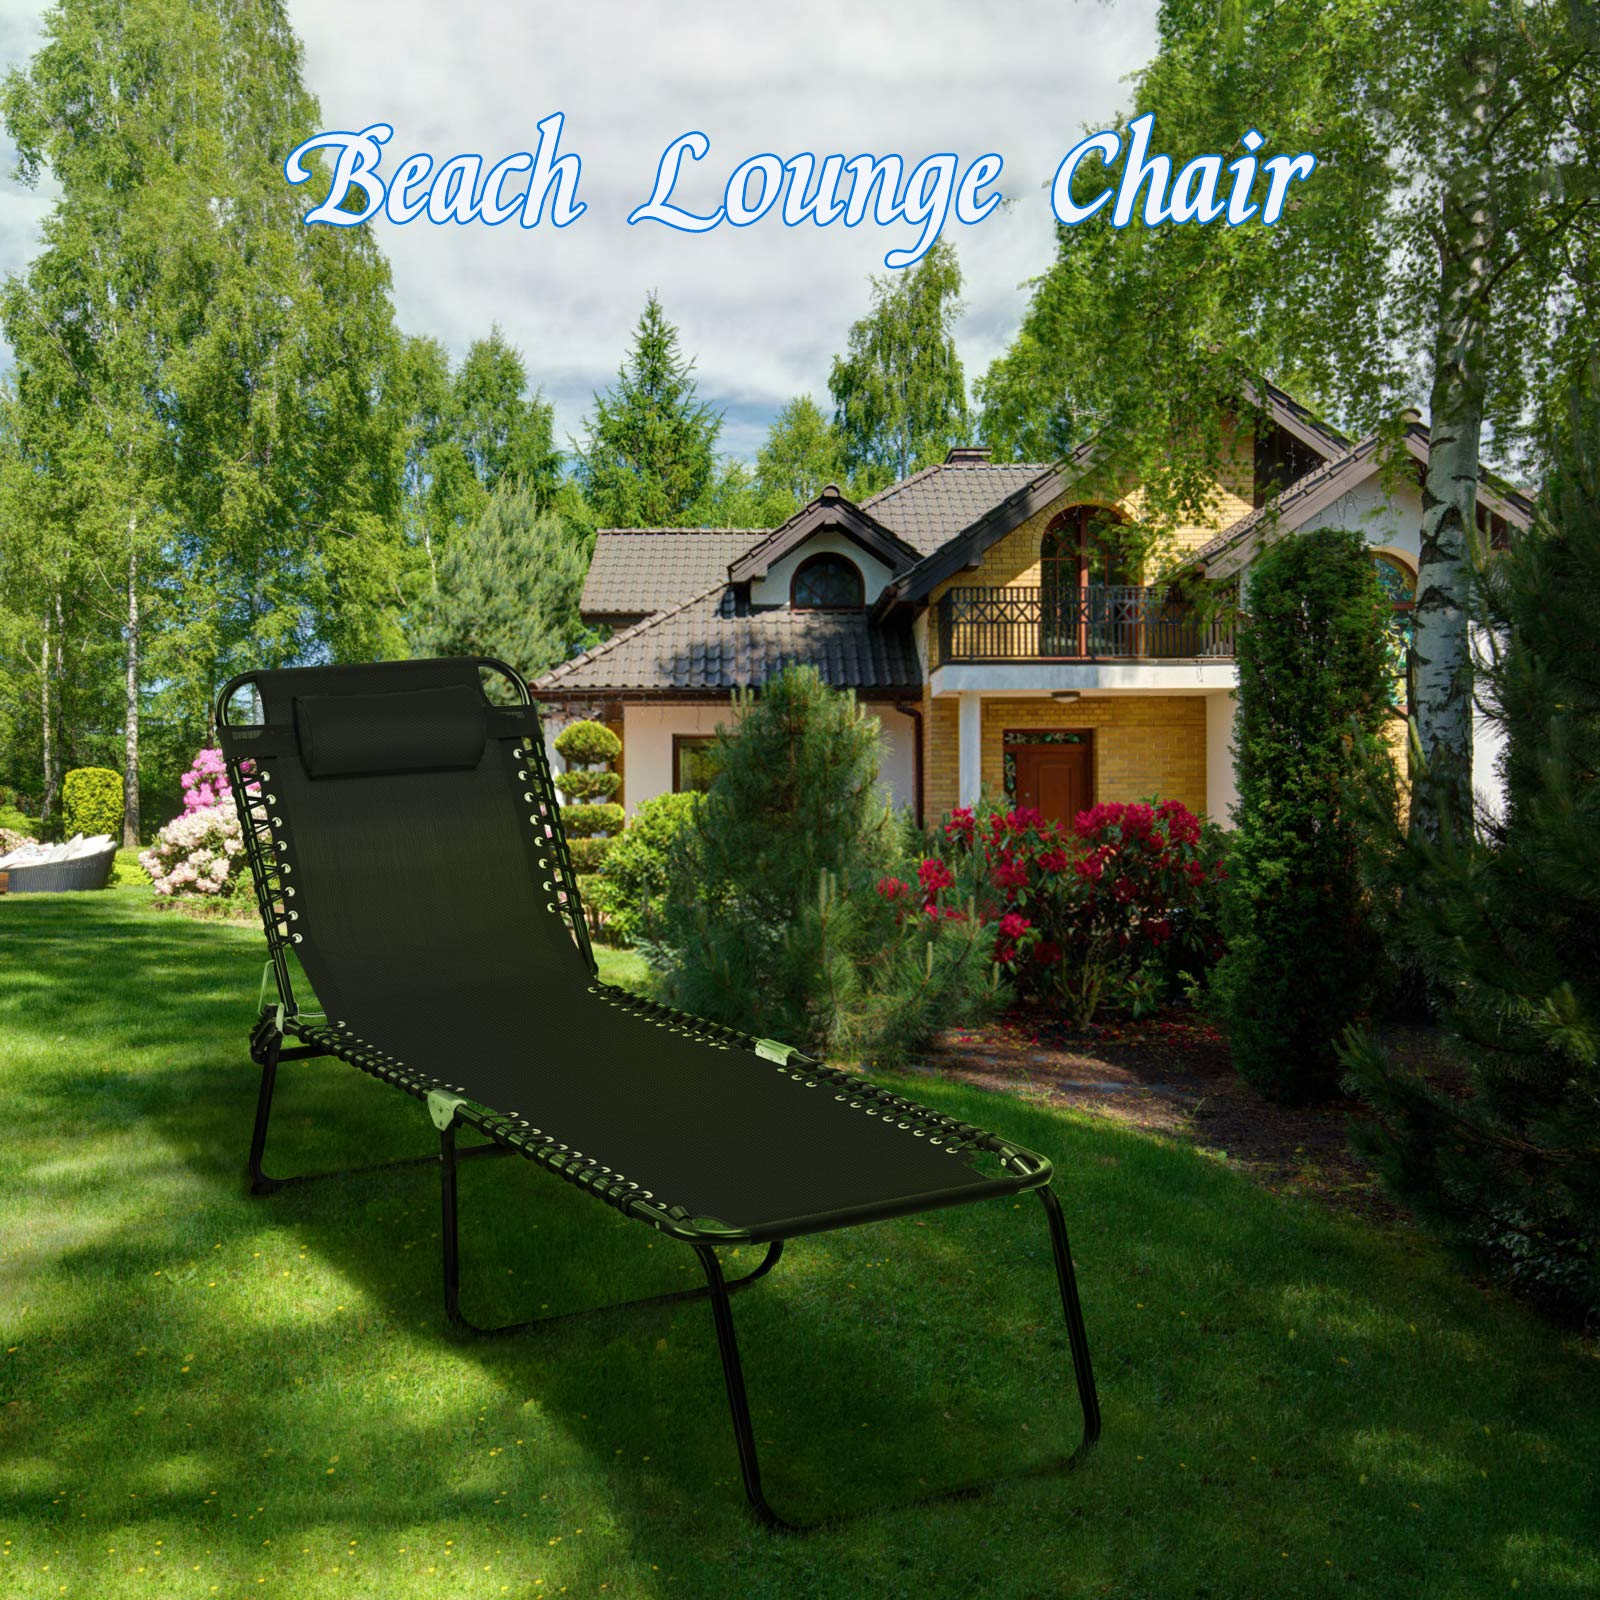 Giantex Outdoor Chaise Lounge Adjustable Sunbathing Seat